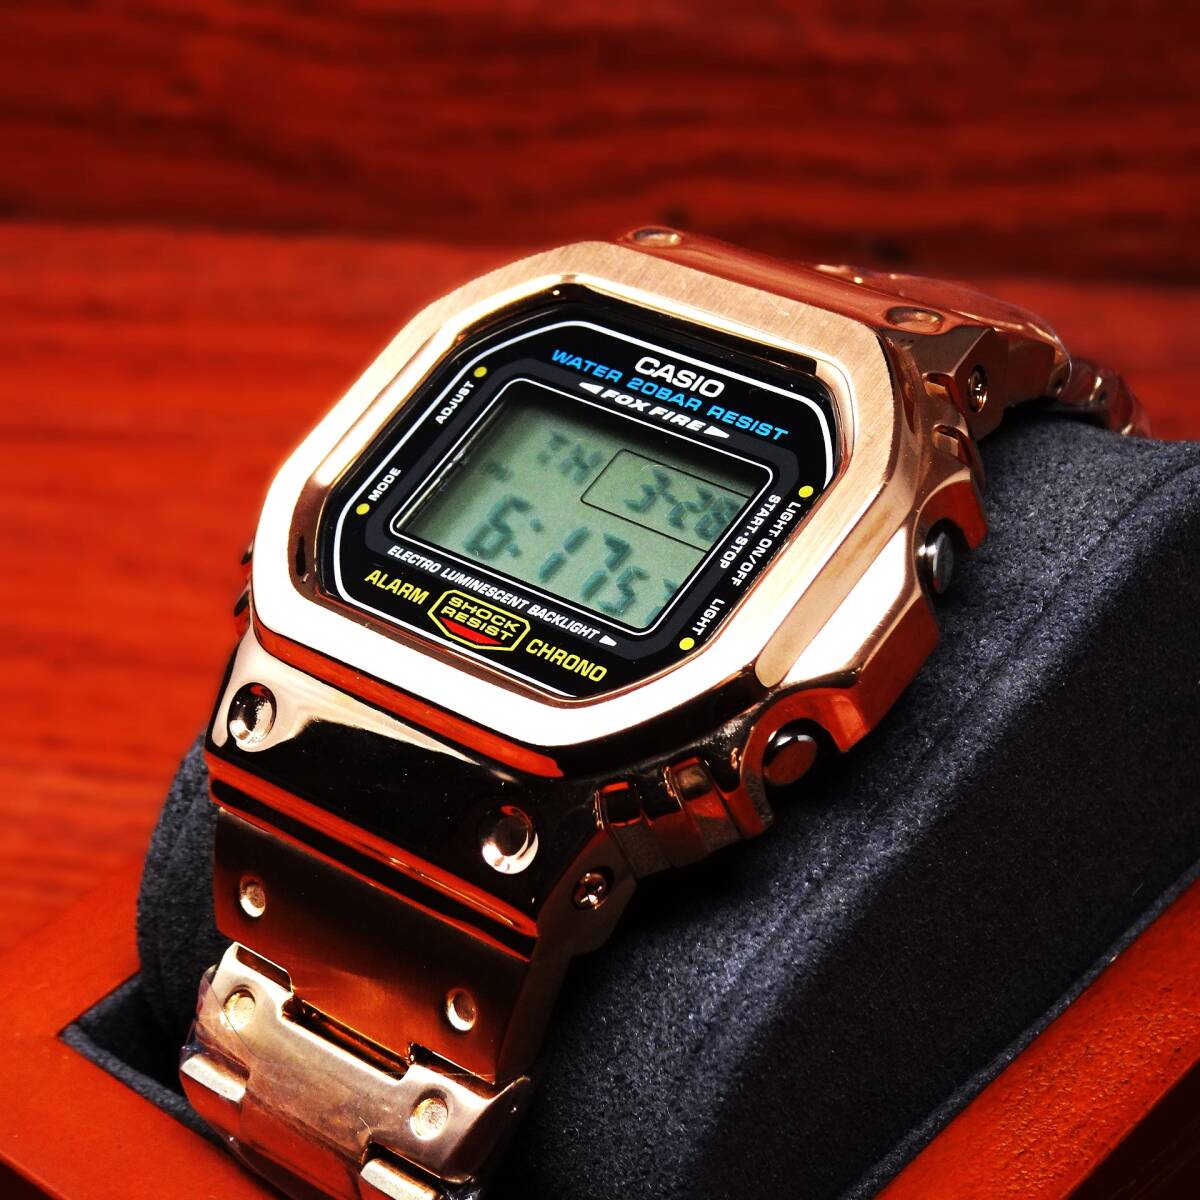 送料無料・新品・Gショックカスタム本体付きDW5600デジタル腕時計フルステンレス製シャンパンゴールドベゼル＆ベルト・フルメタルモデルの画像5